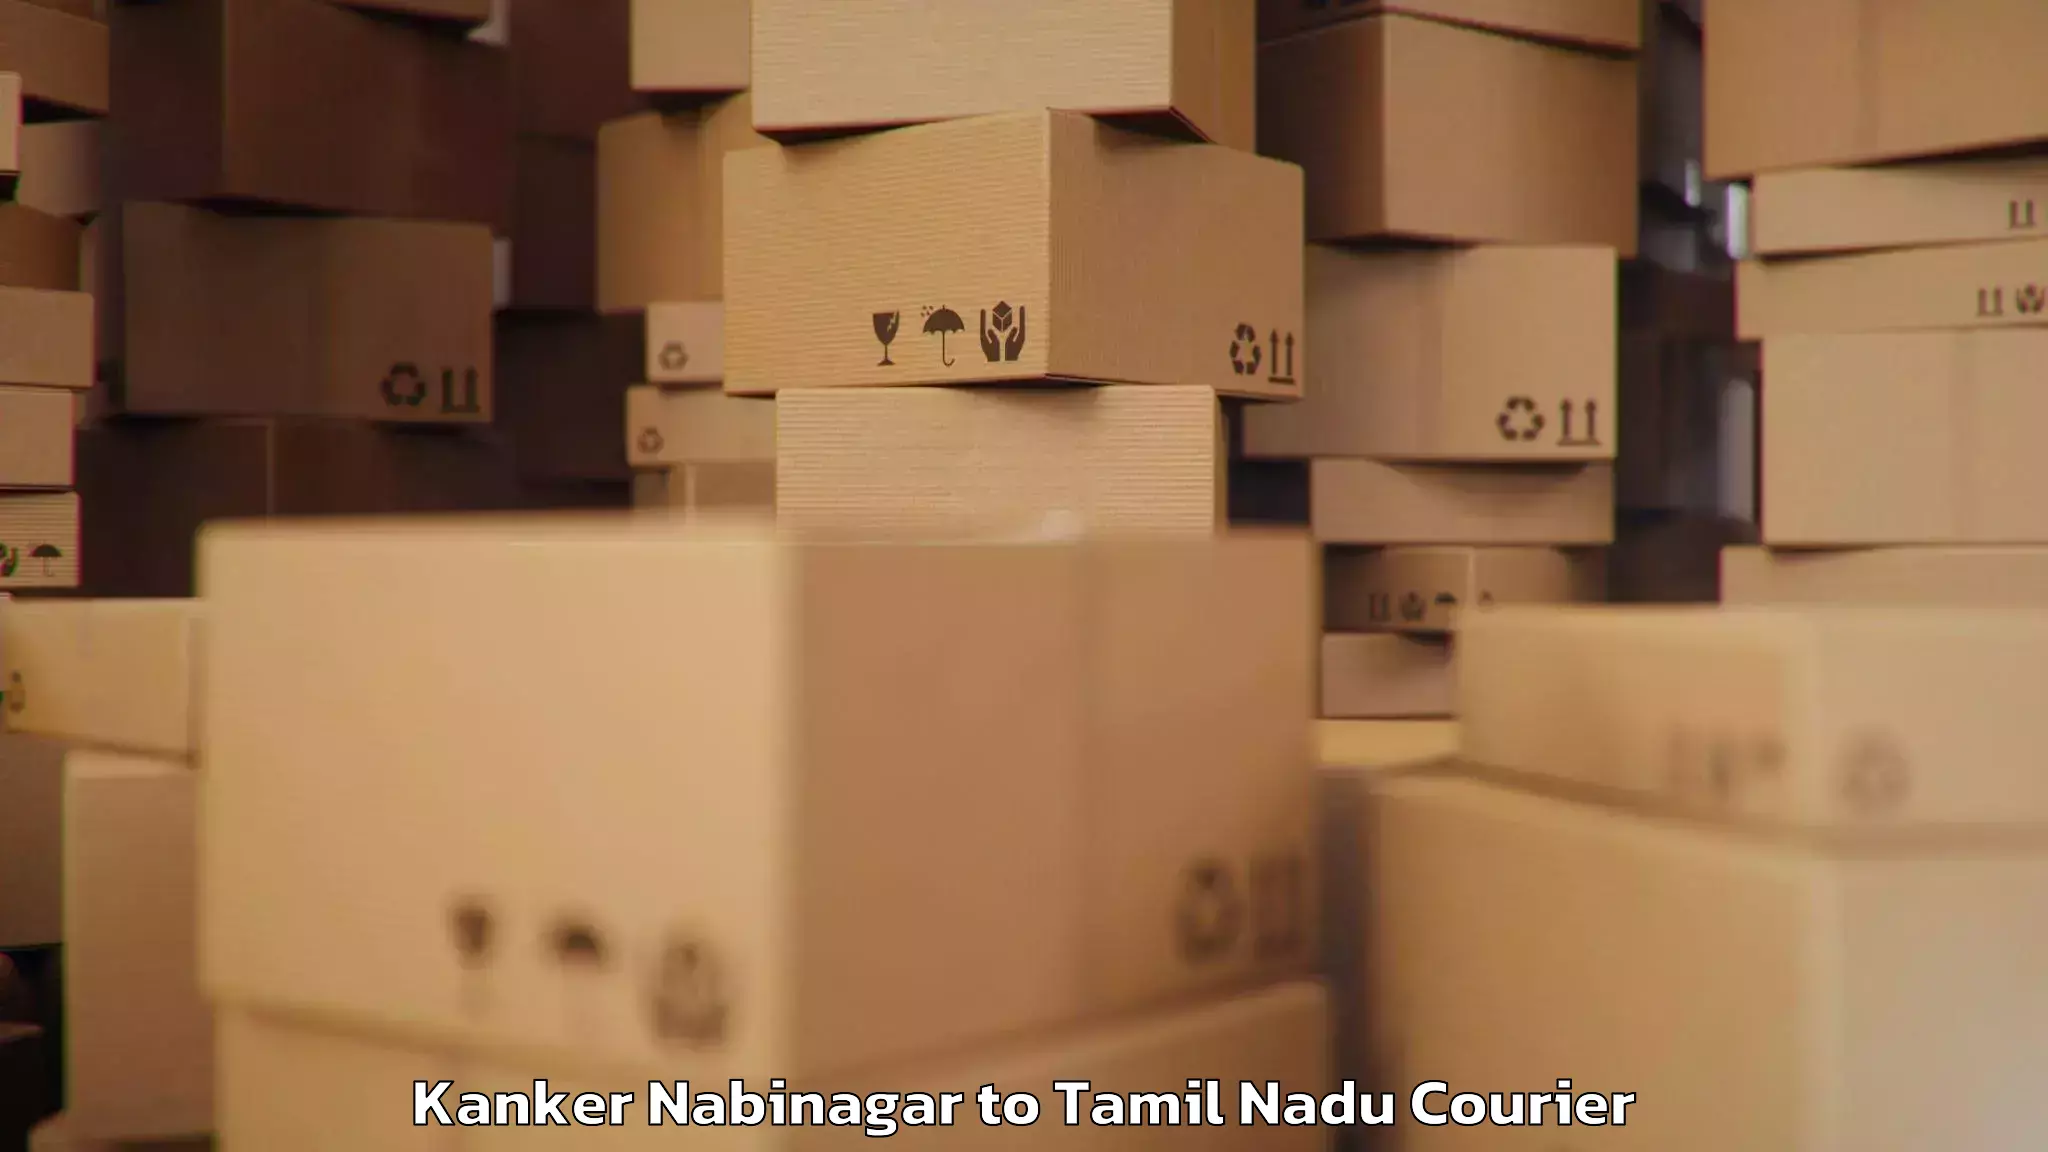 Luggage transfer service Kanker Nabinagar to Virudhachalam